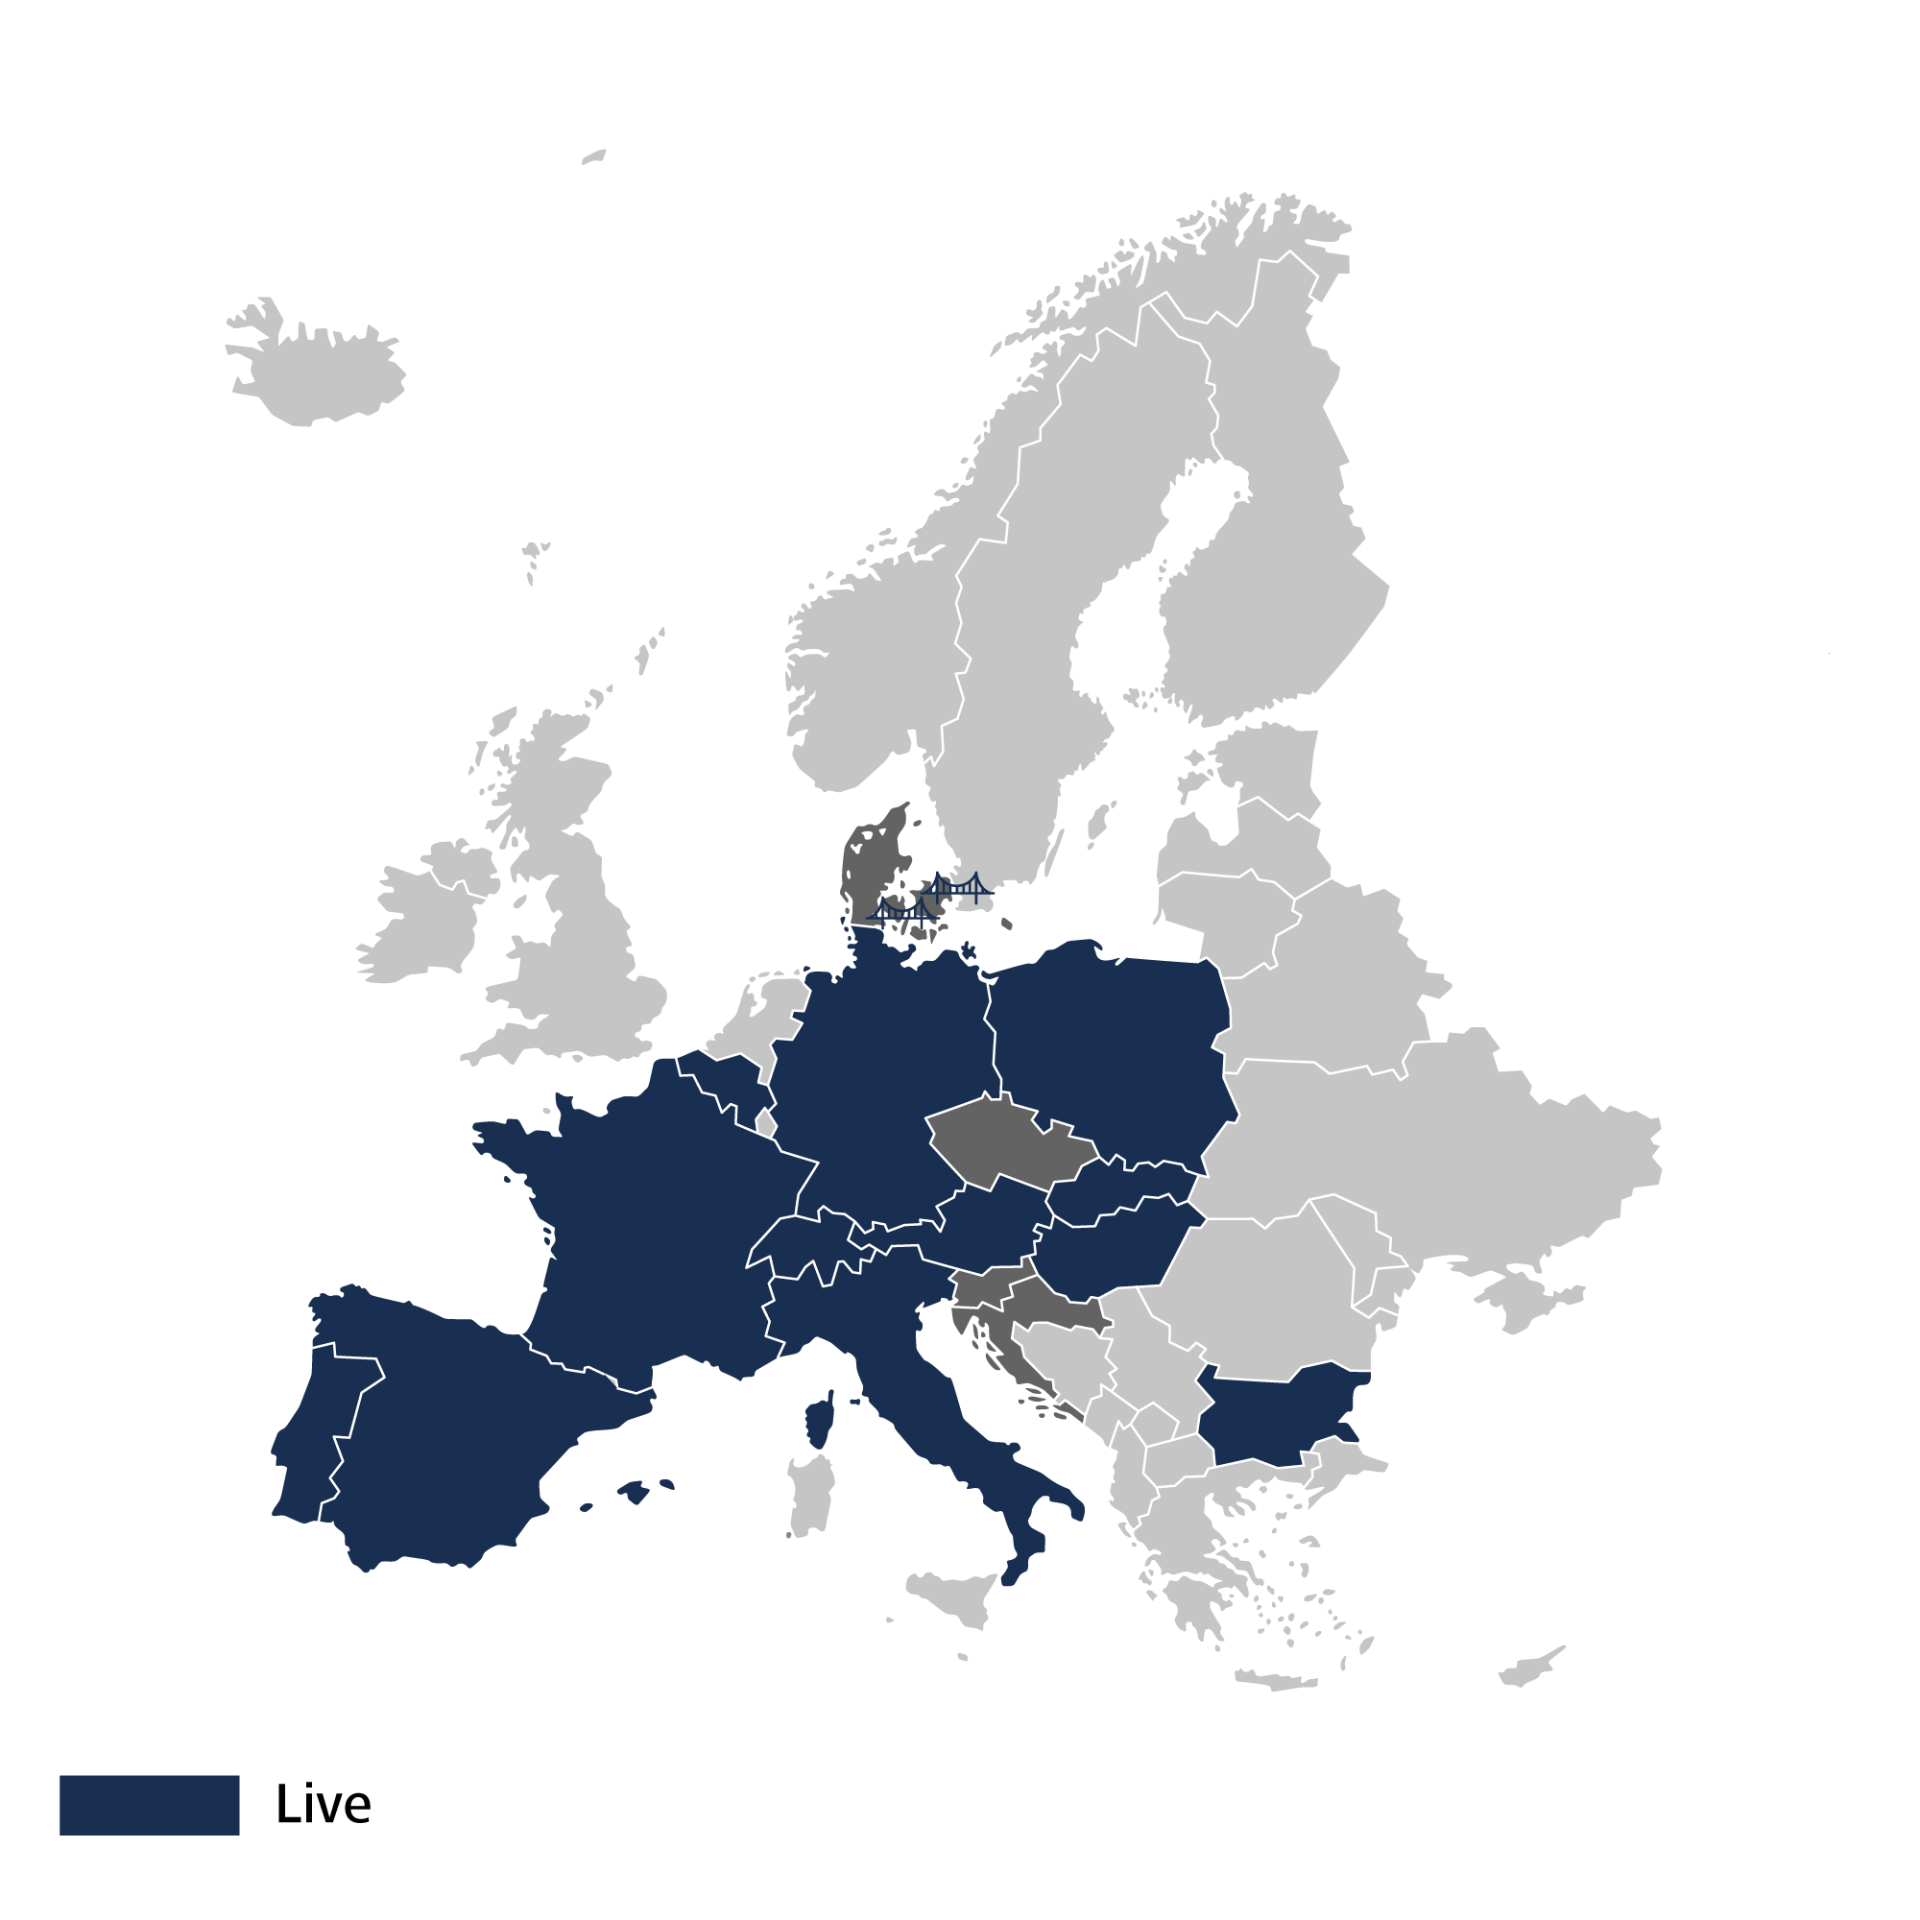 Euroopa kaart